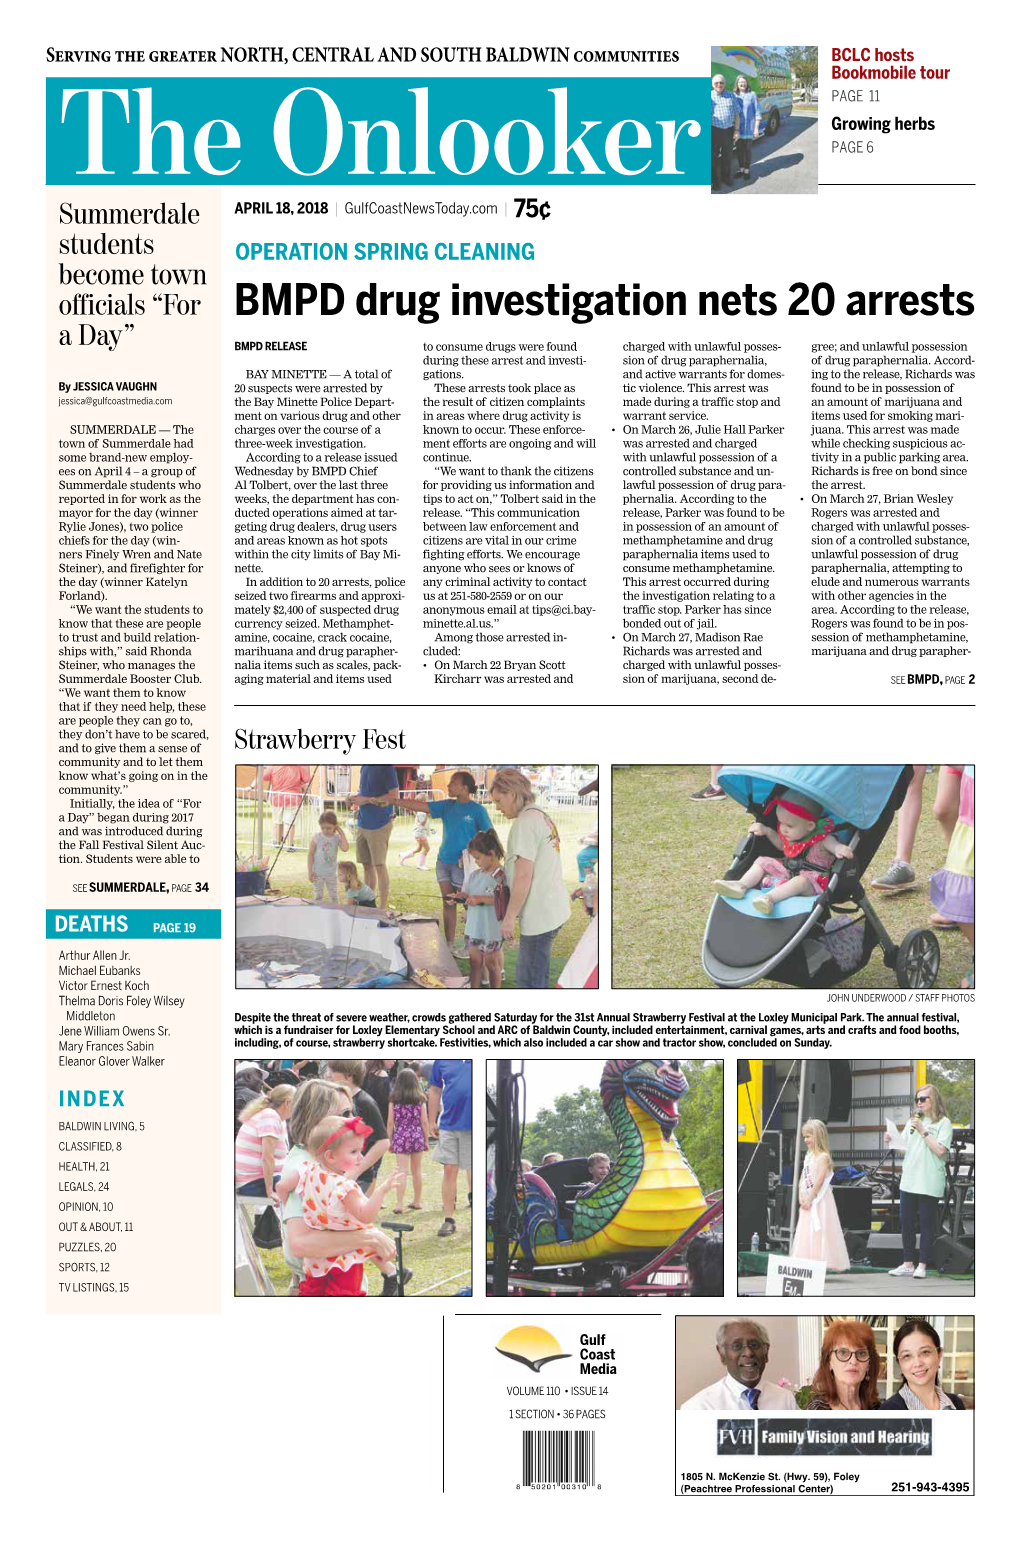 BMPD Drug Investigation Nets 20 Arrests